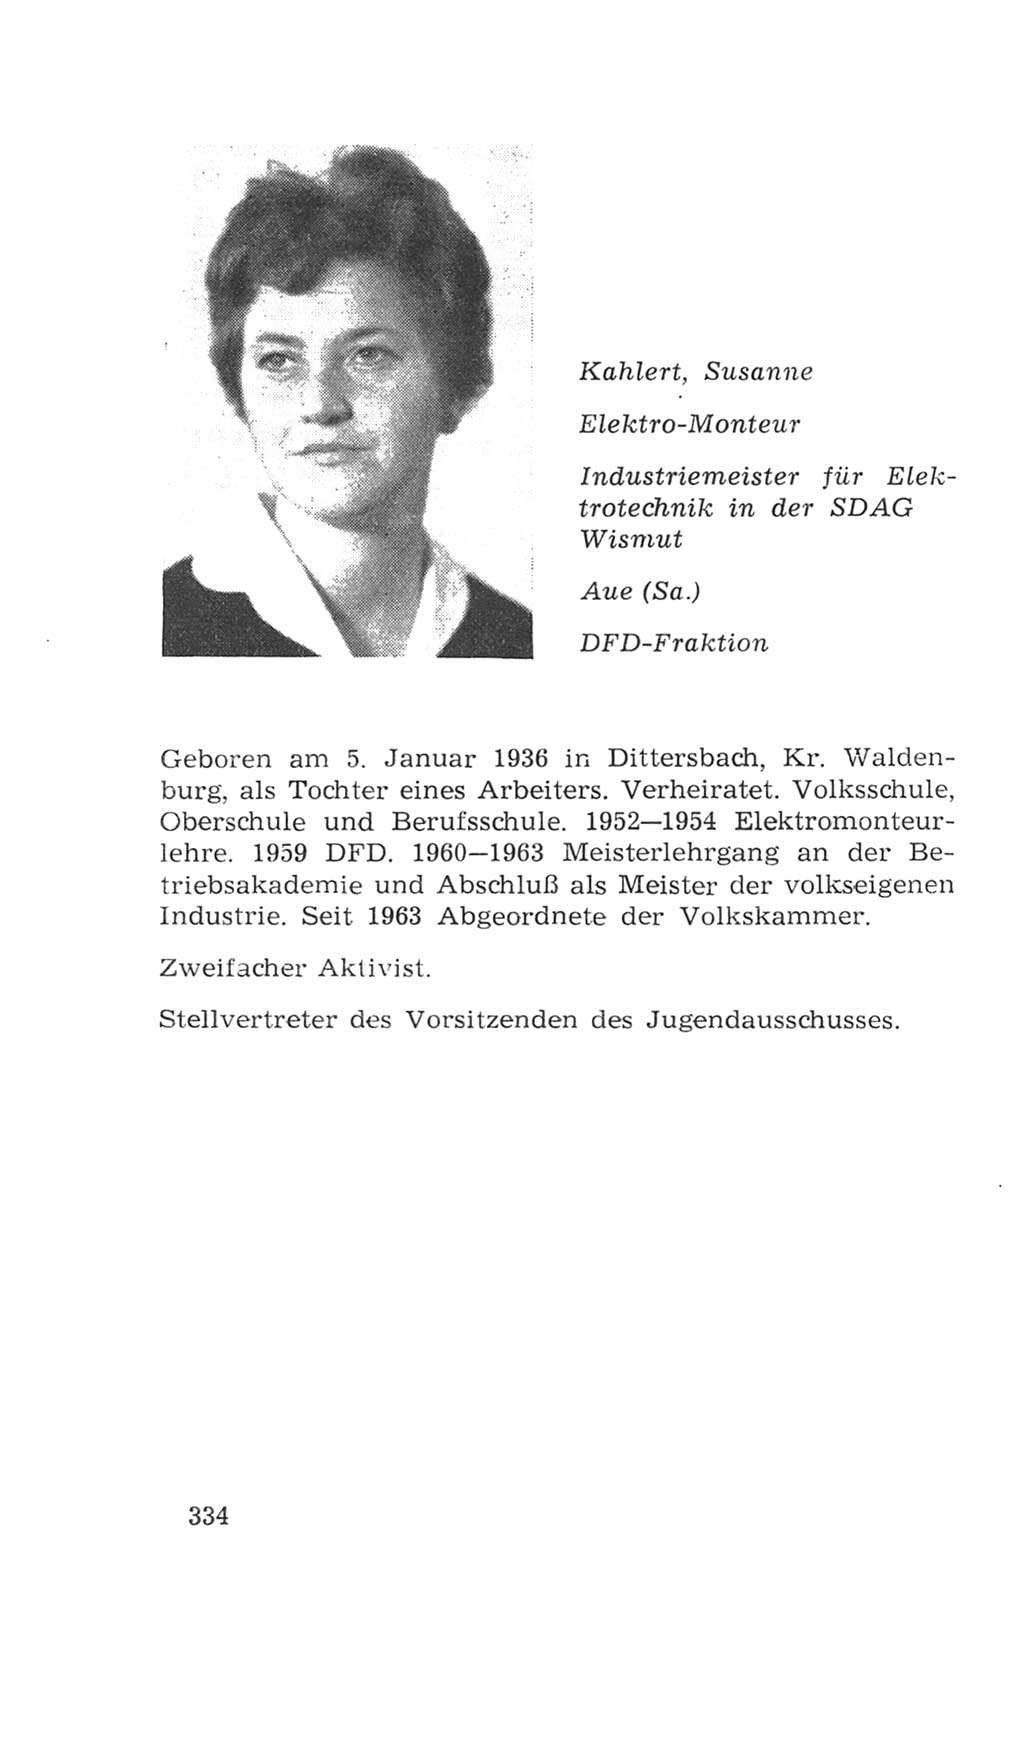 Volkskammer (VK) der Deutschen Demokratischen Republik (DDR), 4. Wahlperiode 1963-1967, Seite 334 (VK. DDR 4. WP. 1963-1967, S. 334)